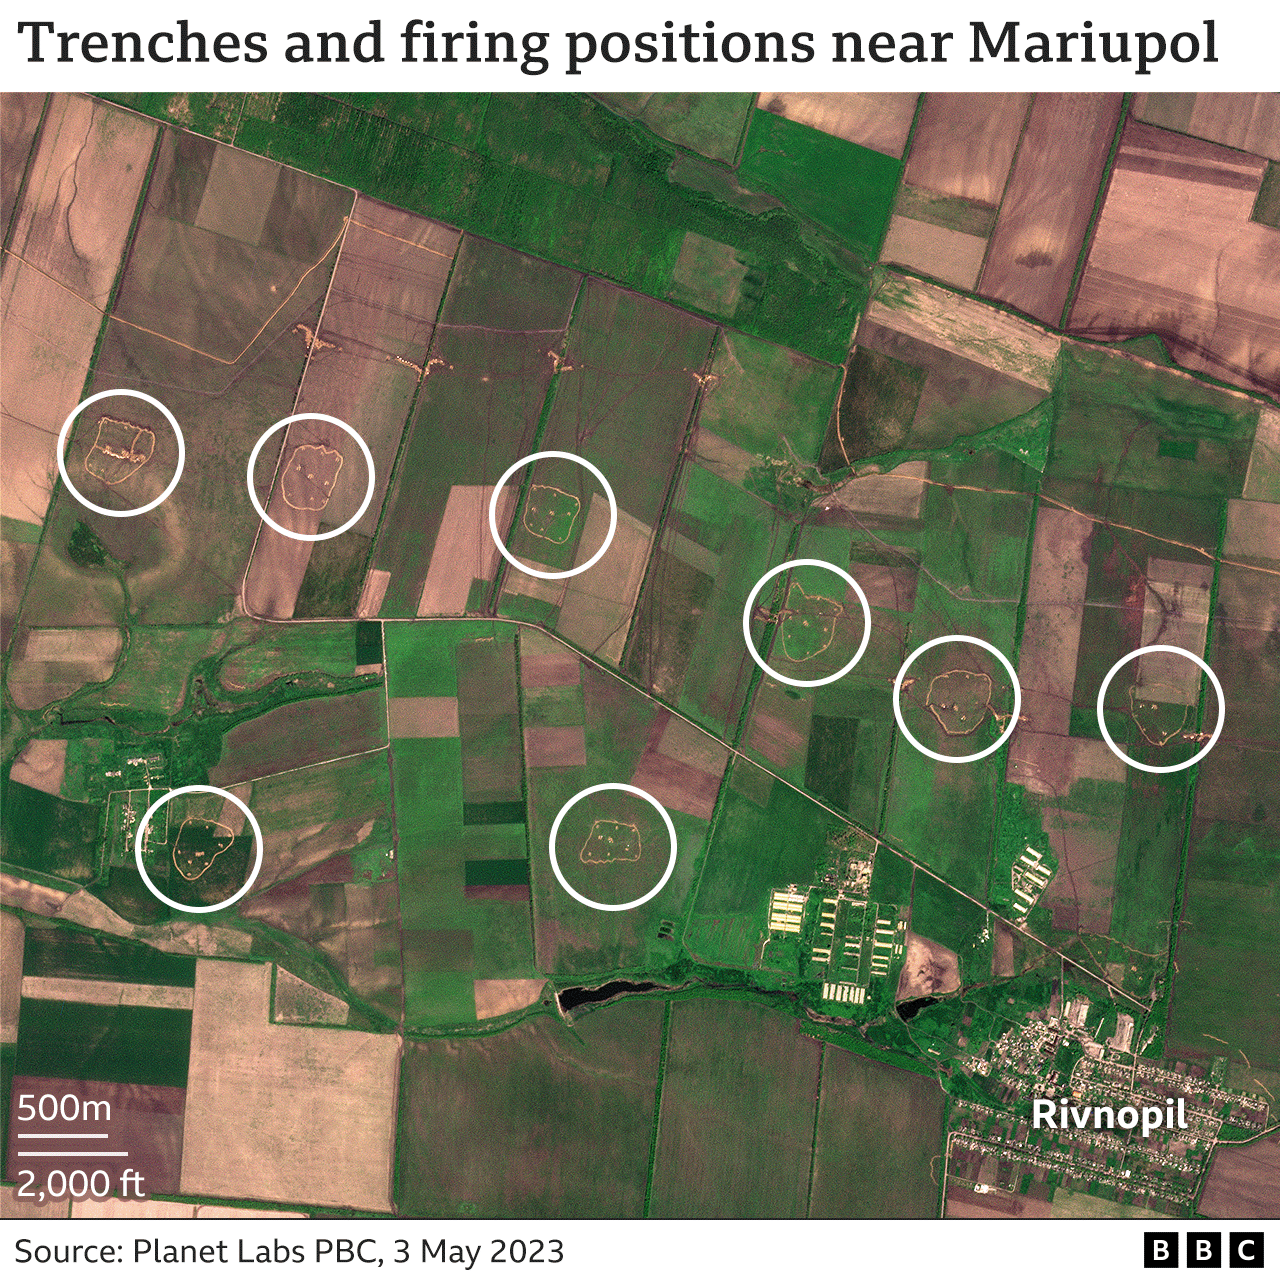 Δορυφορική εικόνα γης έξω από το Rivnopil, με επισημασμένες χωματουργικές εργασίες για 8 θέσεις πυροβολικού